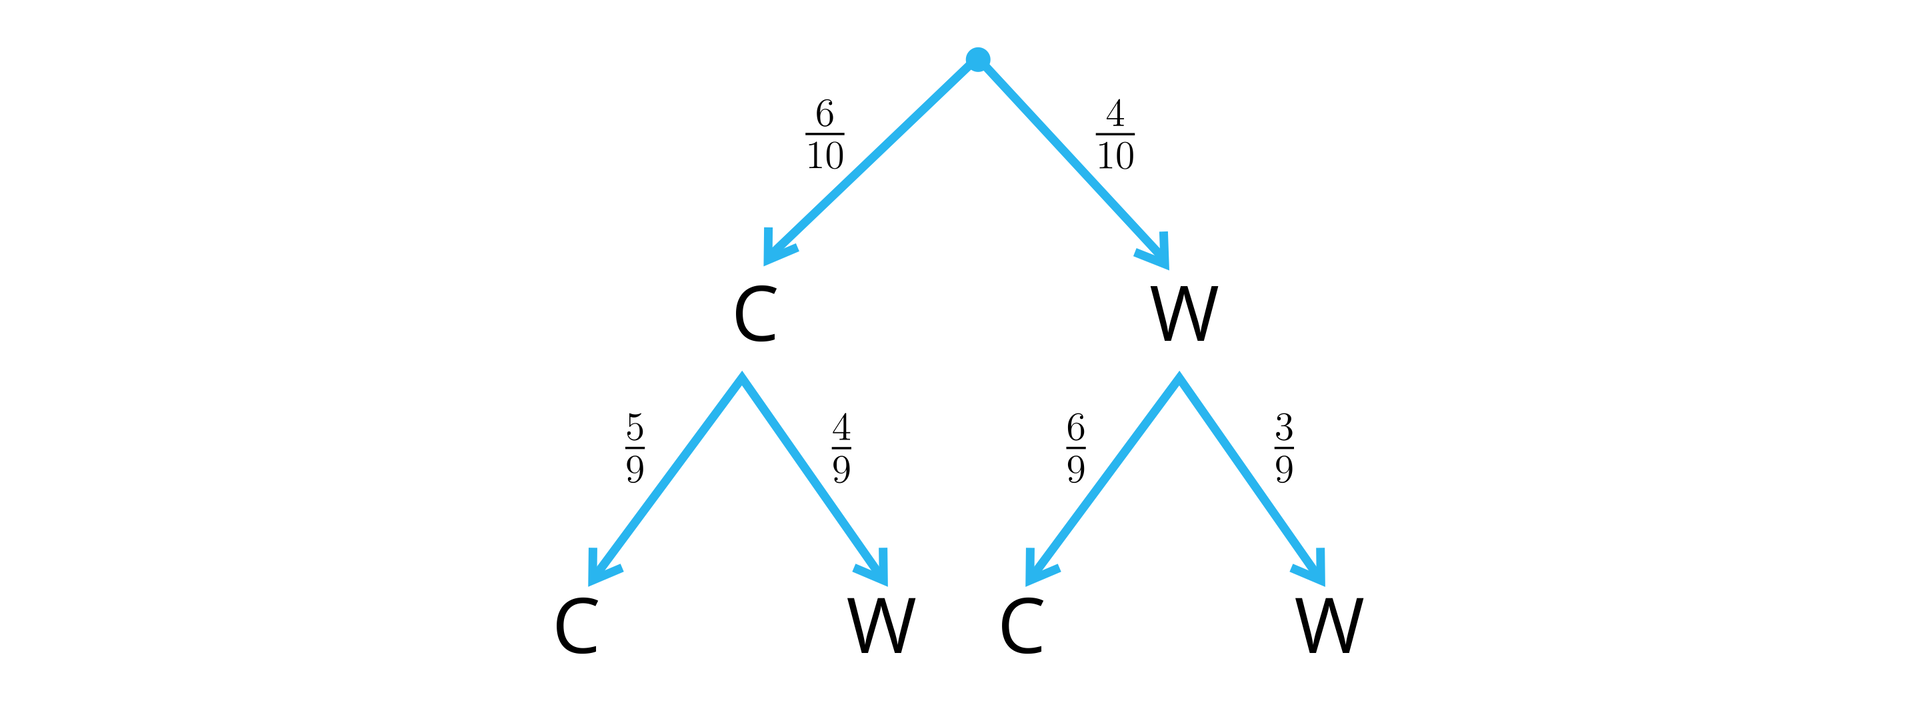 Ilustracja przedstawia drzewko. Z punktu wyjściowego odchodzą dwie gałęzie. Lewa gałąź ma prawdopodobieństwo 610 i prowadzi do punktu C, z którego narysowano kolejne dwie gałęzie: do kolejnego wierzchołka C prowadzi gałąź z prawdopodobieństwem 59, a do wierzchołka W prowadzi gałąź z prawdopodobieństwem 49. Prawa gałąź w pierwotnego rozgałęzienia prowadzi do wierzchołka C z prawdopodobieństwem 410, od którego odchodzą dwie kolejne gałęzie: do wierzchołka C z prawdopodobieństwem 69, a do wierzchołka W z prawdopodobieństwem 39.